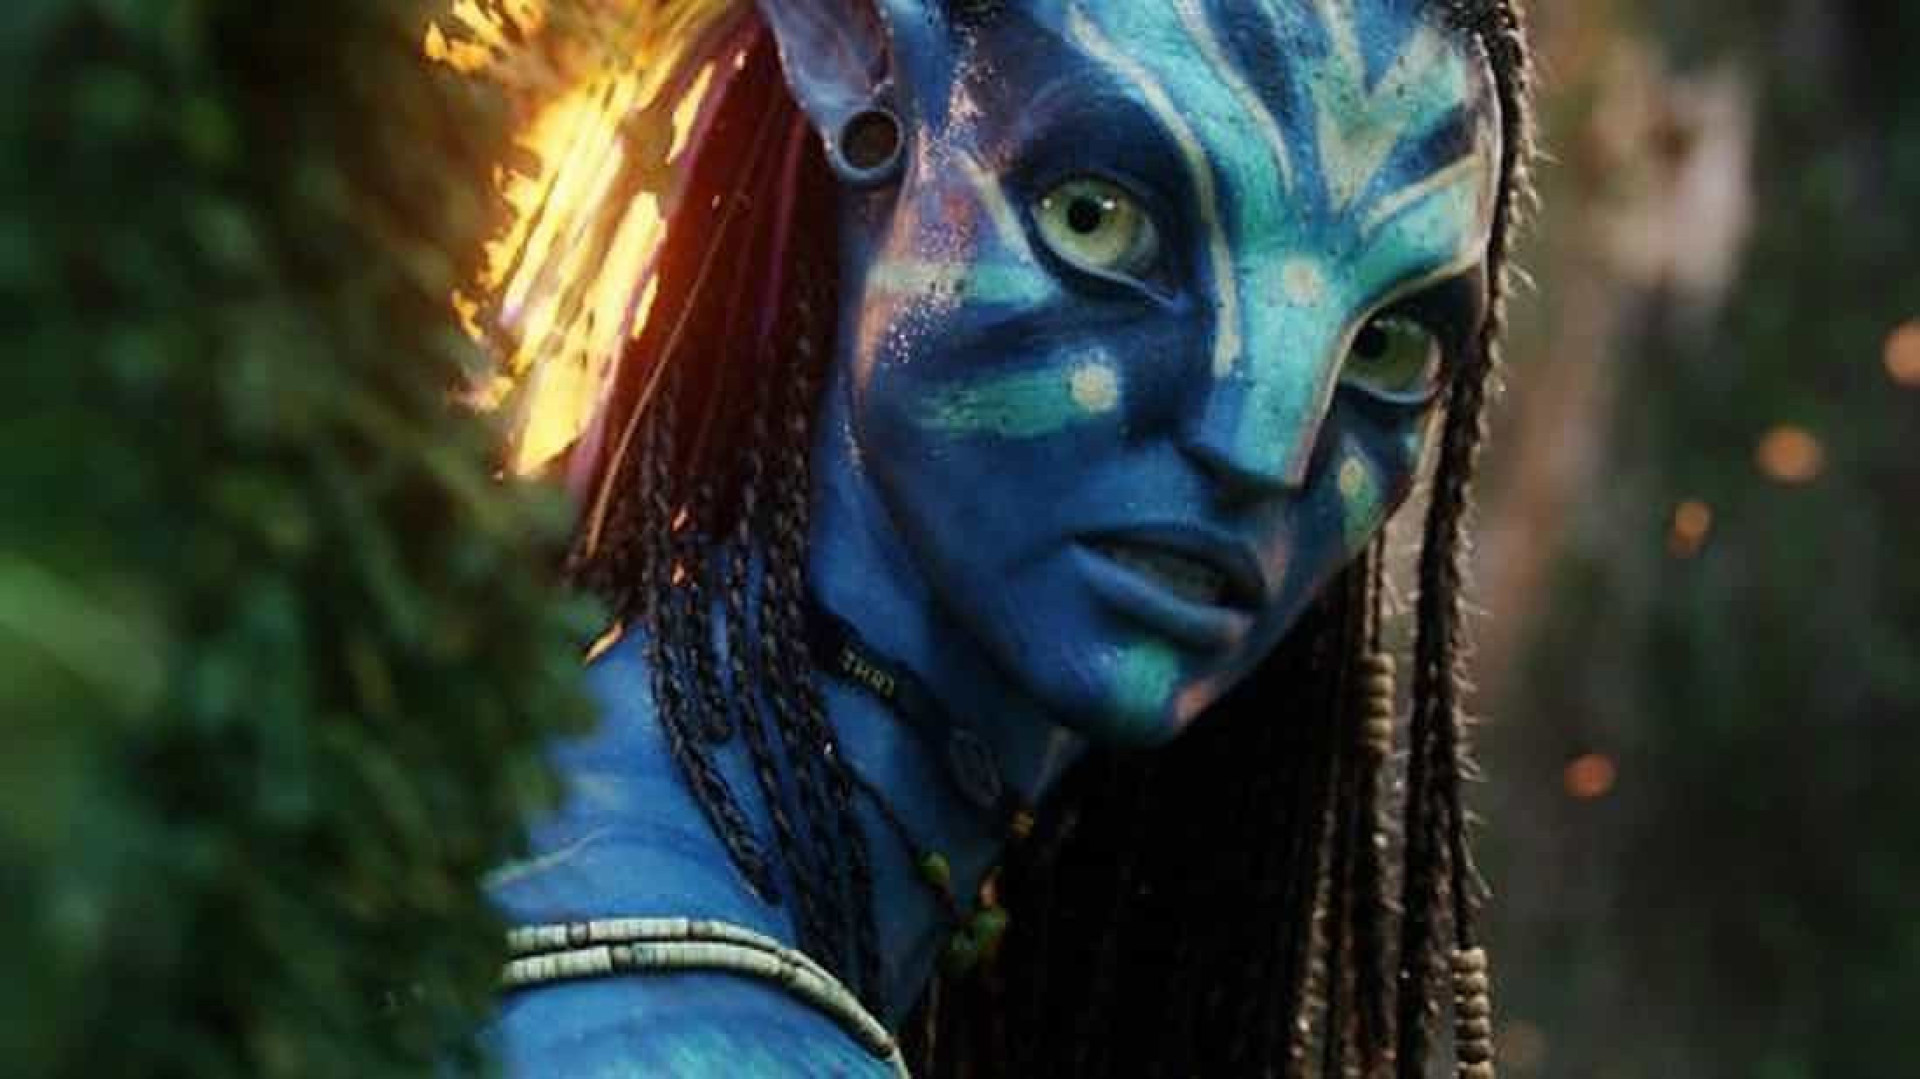 <p>Weltweites Einspielergebnis: 2,320,250,281 $</p><p>Die sehnsüchtig erwartete Fortsetzung von "Avatar" begeisterte das Publikum weltweit und brachte den Film innerhalb kürzester Zeit auf Position drei der erfolgreichsten Filme aller Zeiten. Berichten zufolge hat Cameron 350 Millionen US-Dollar für die Produktion des Films ausgegeben, wobei mindestens 100 Millionen US-Dollar für das Marketing aufgewendet wurden. Der Regisseur schätzte, dass der Film 2 Milliarden US-Dollar einspielen müsse, um die Gewinnzone zu erreichen.</p>